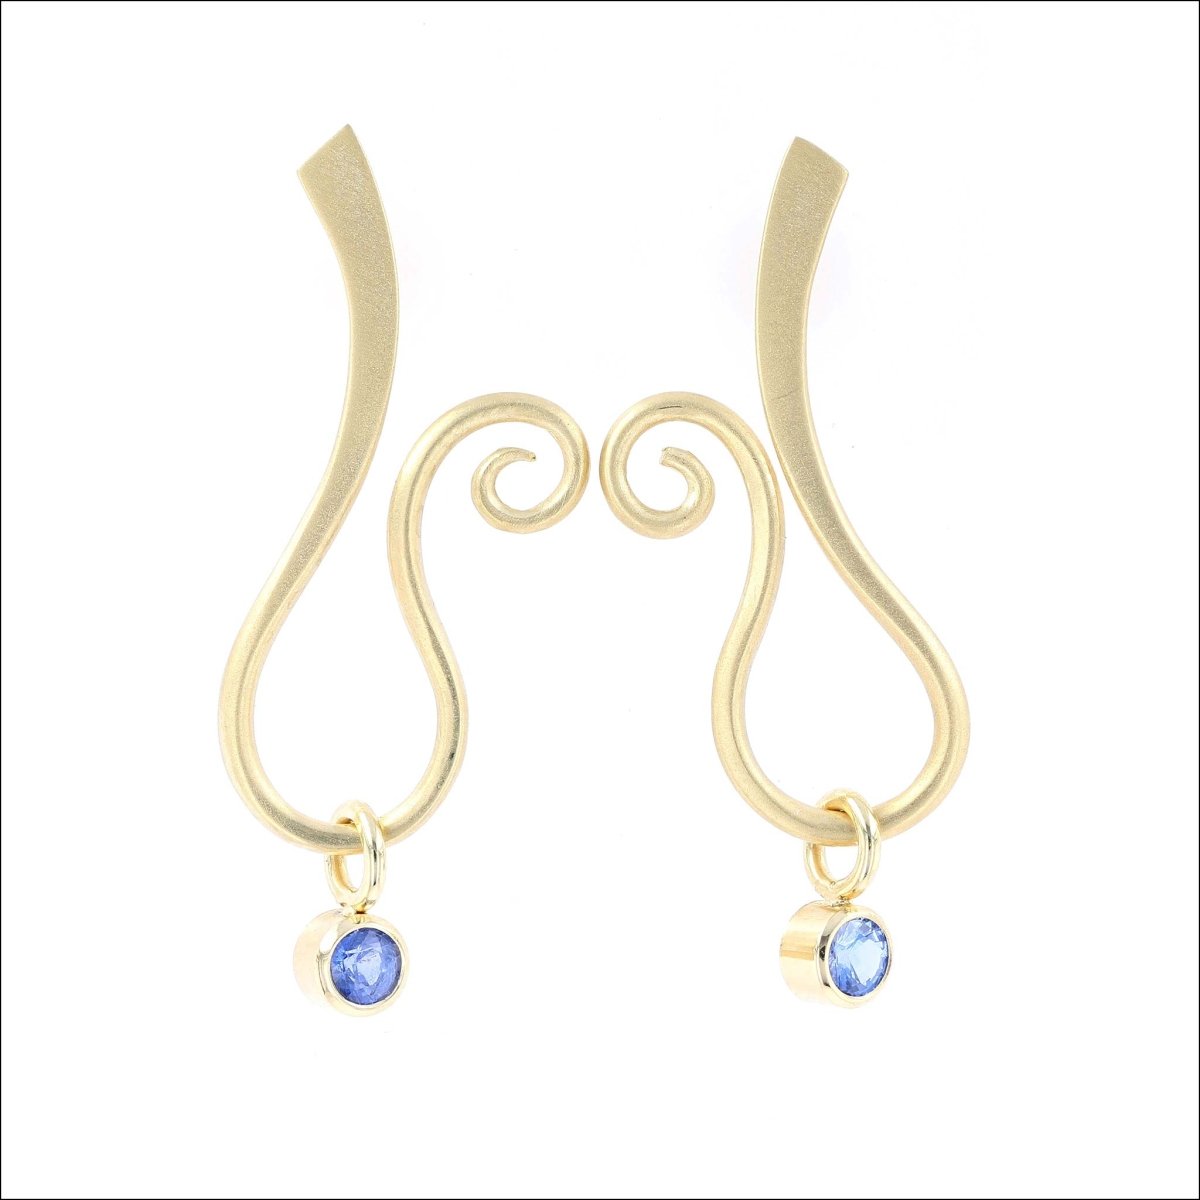 Forged Swirly Drop Earrings 18KY - JewelsmithEarrings